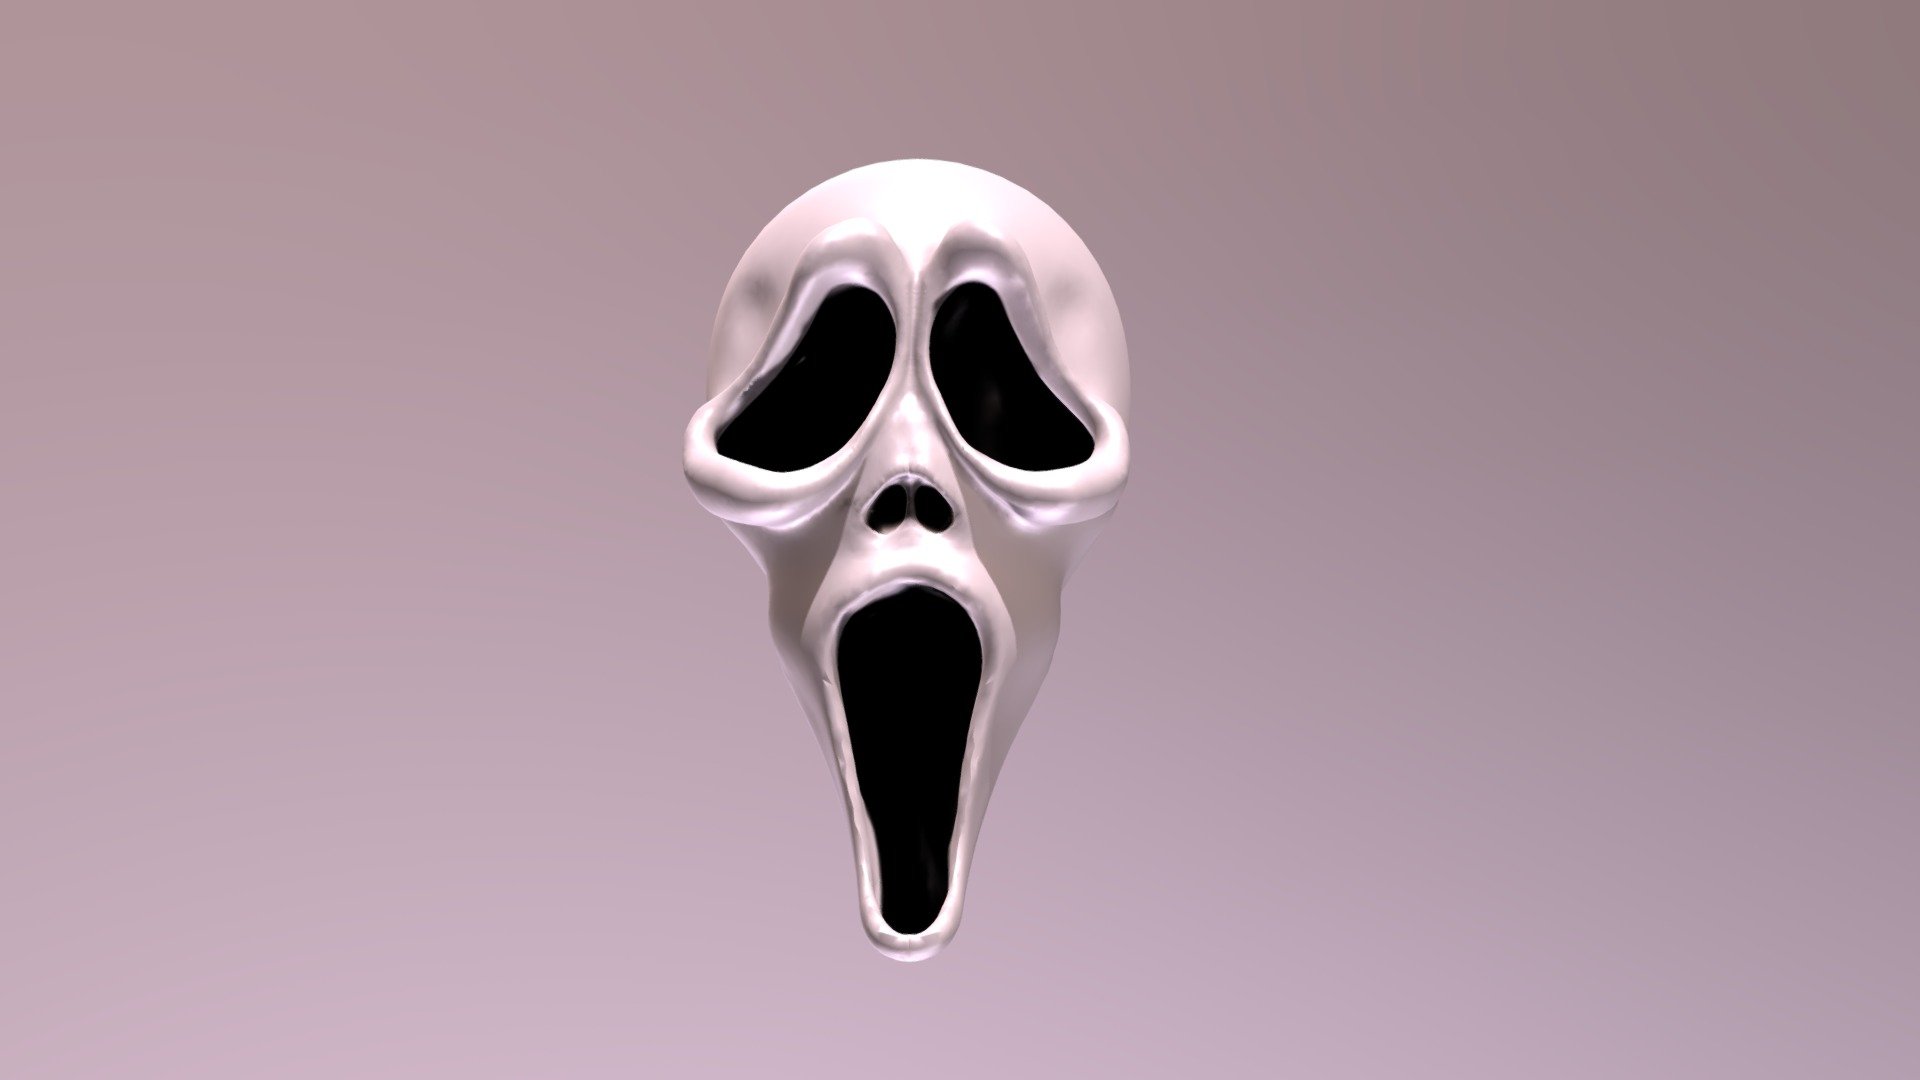 Sream Mask - 3D model by sasdah [5e92c80] - Sketchfab